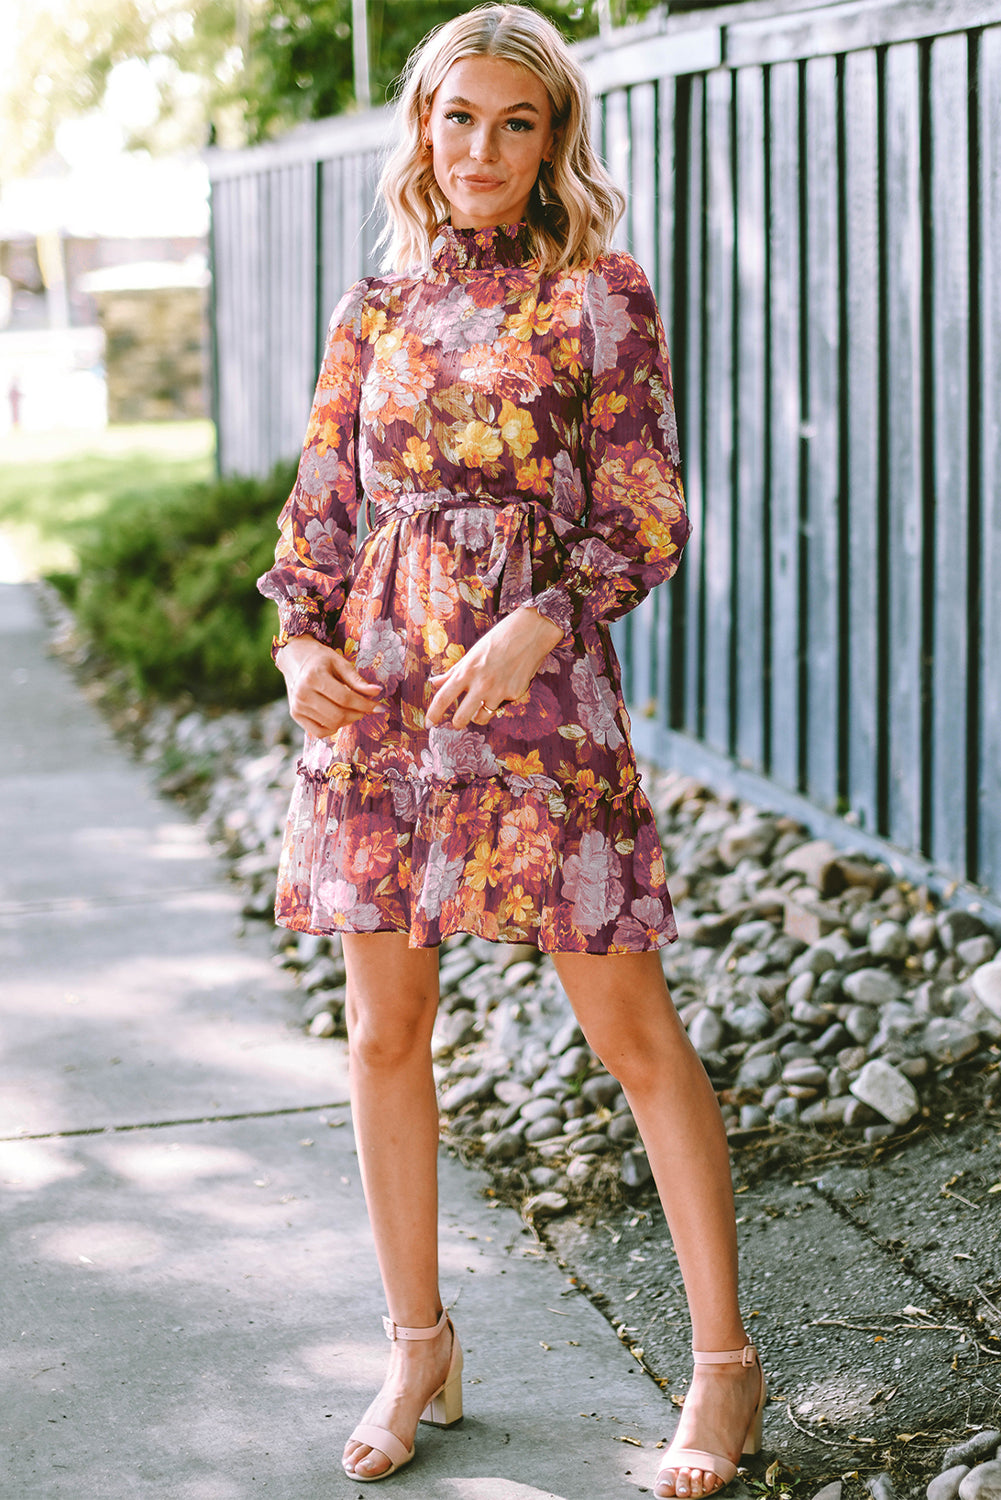 Raznobojna cvjetna haljina s visokim ovratnikom i visokim strukom